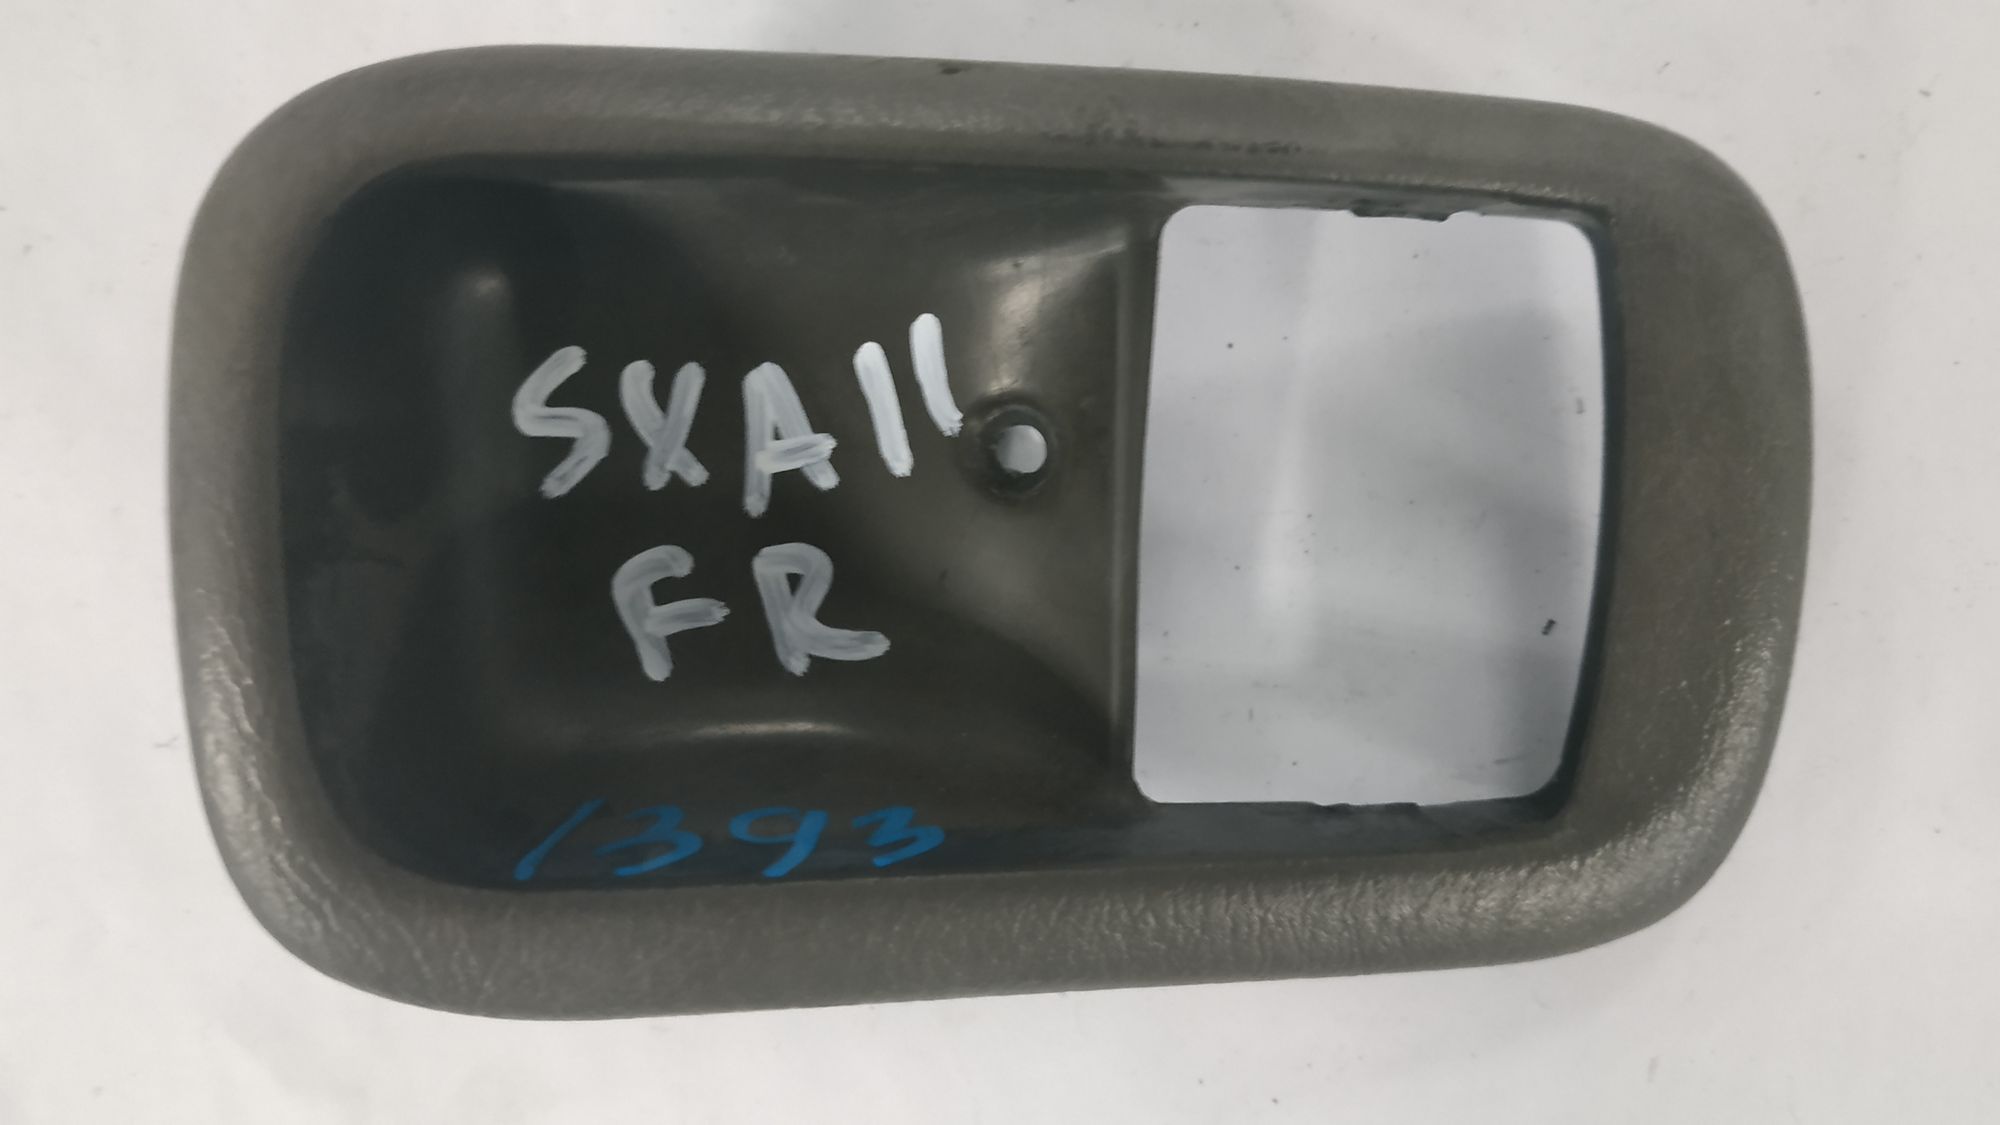 Накладка на ручку передней правой двери SXA11